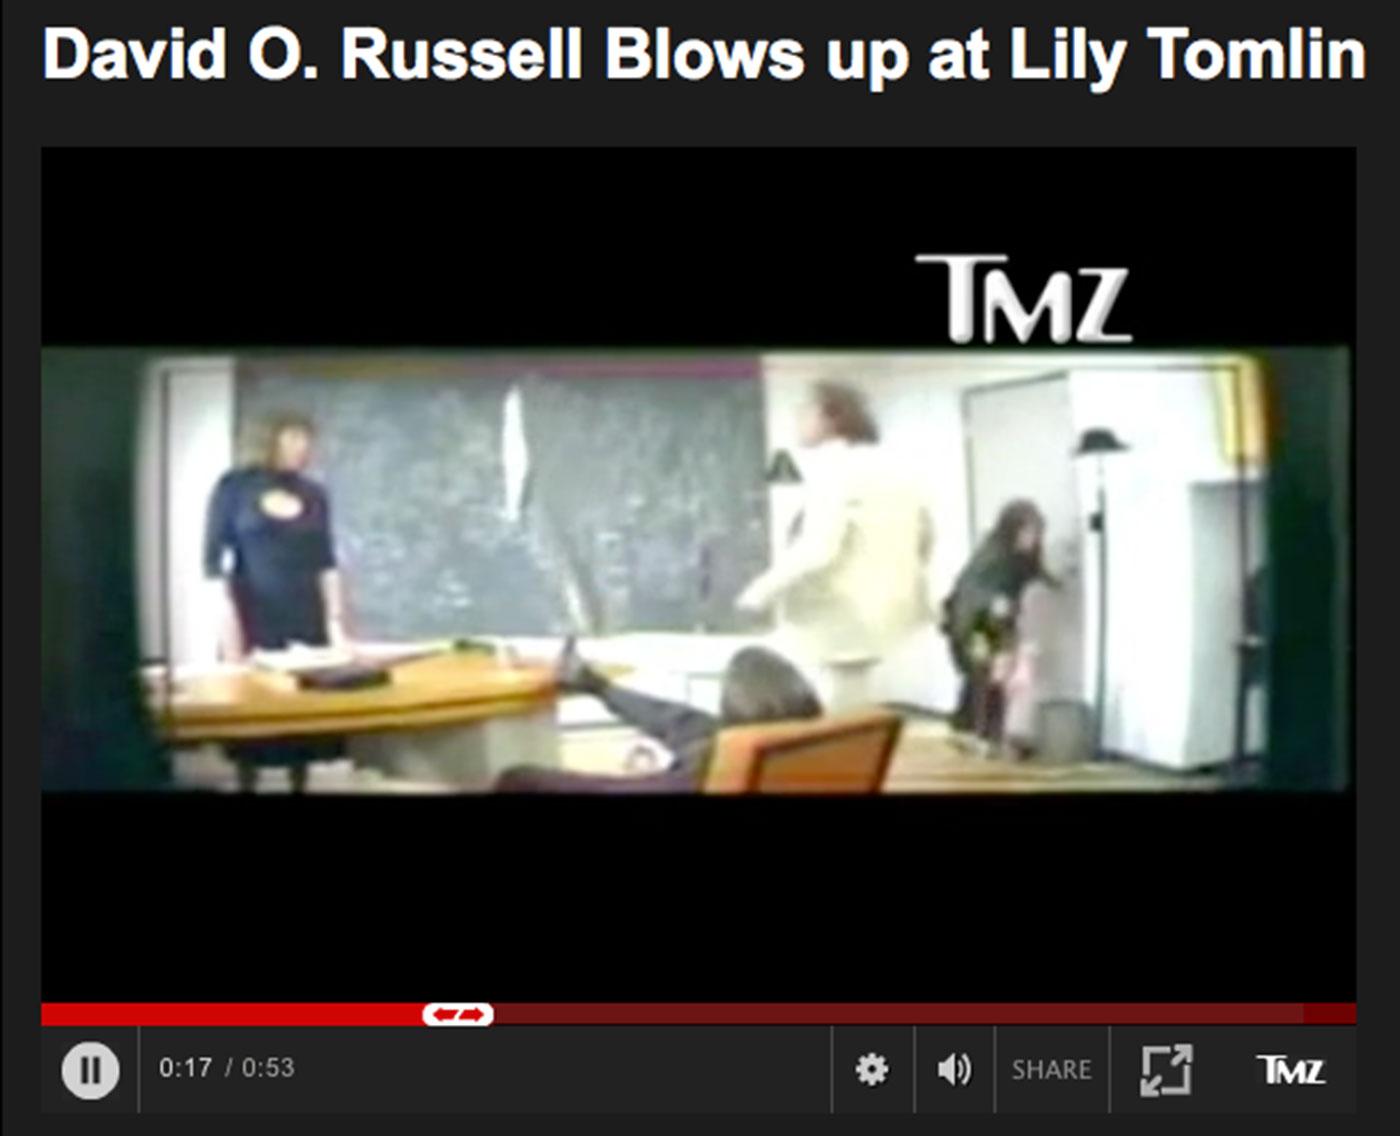 TMZ publicerar en video på ett liknande bråk mellan David O Russell och Lily Tomlin.